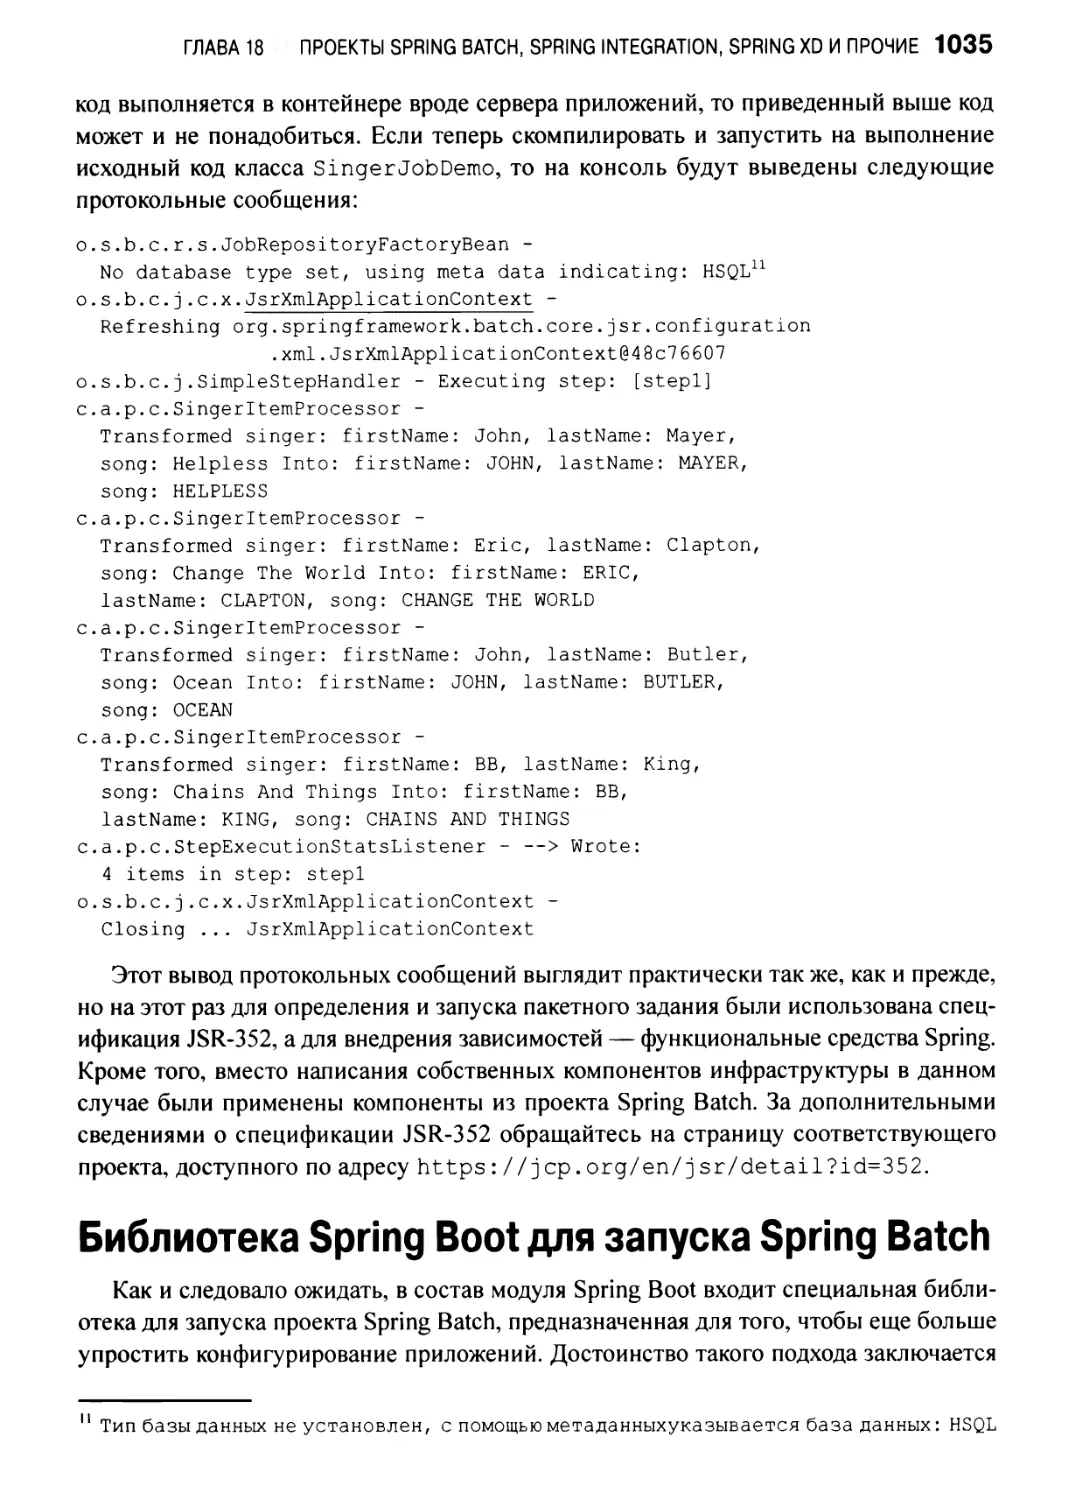 Библиотека Spring Boot для запуска Spring Batch